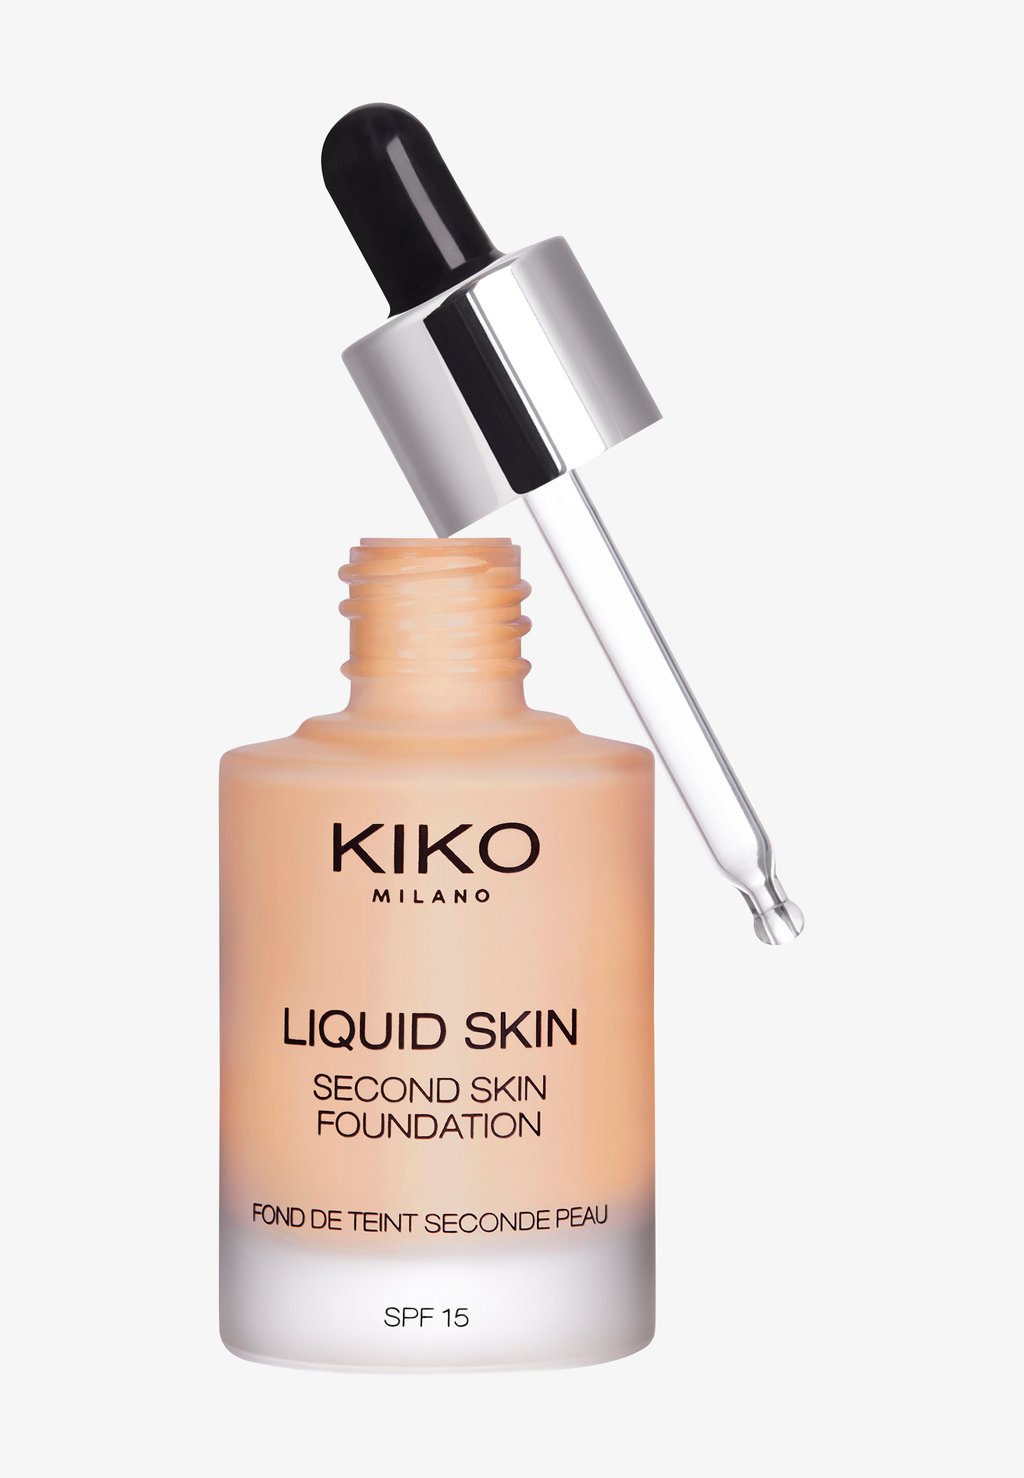 Тональный крем Liquid Skin Second Skin Foundation KIKO Milano, цвет 30 warm beige